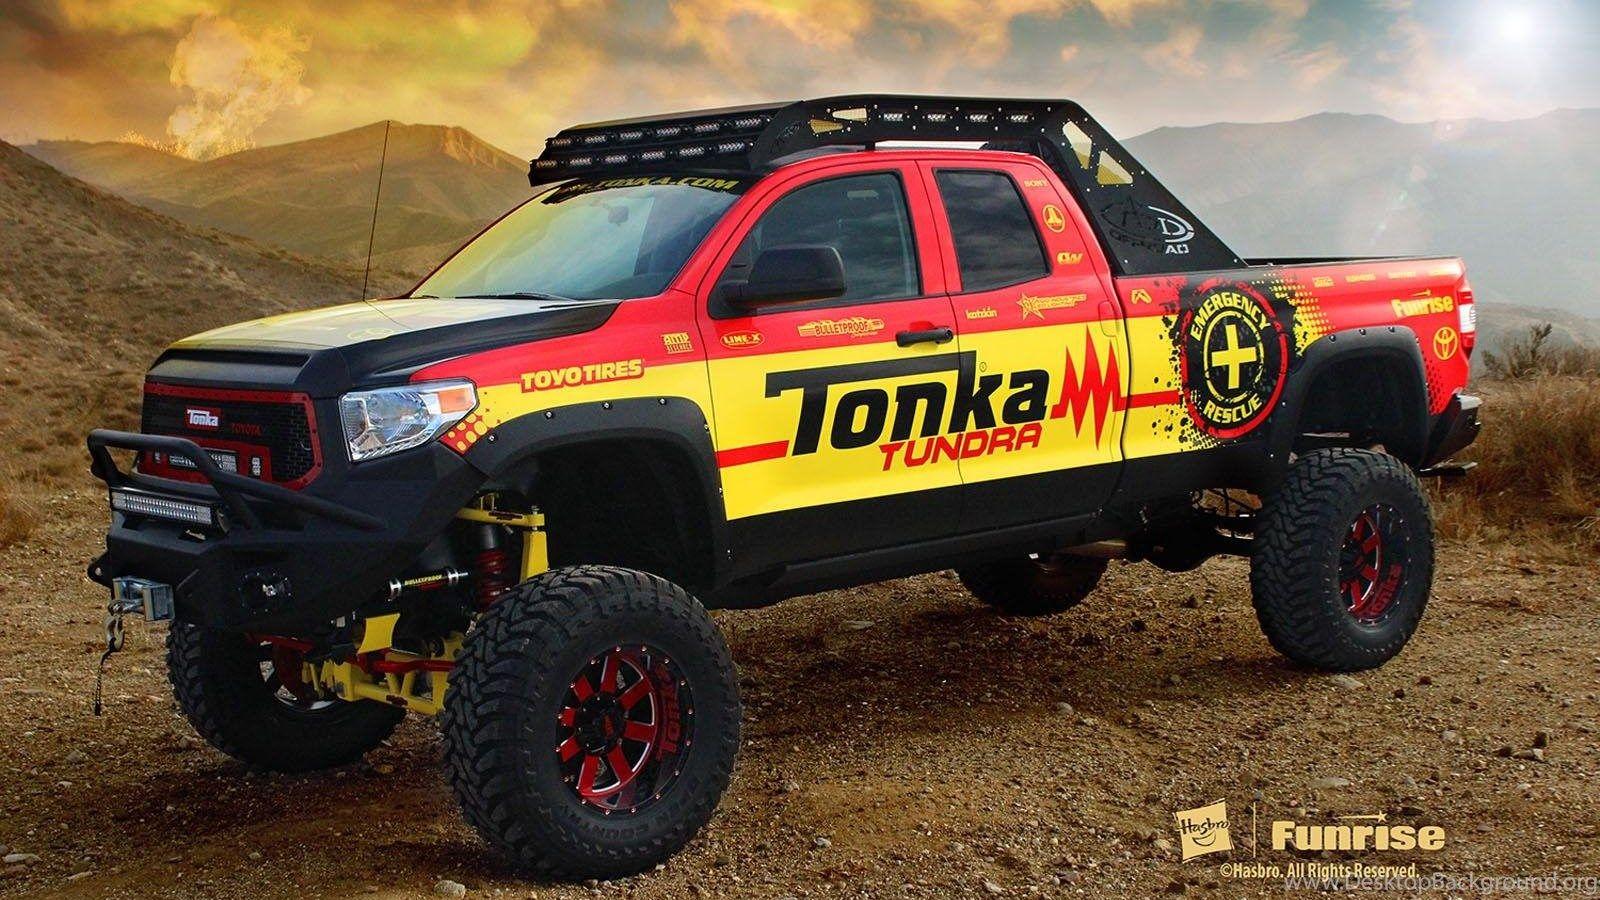 Toyota Tundra Monster Trucks Desk 4K Wallpapers Desk 4K Backgrounds